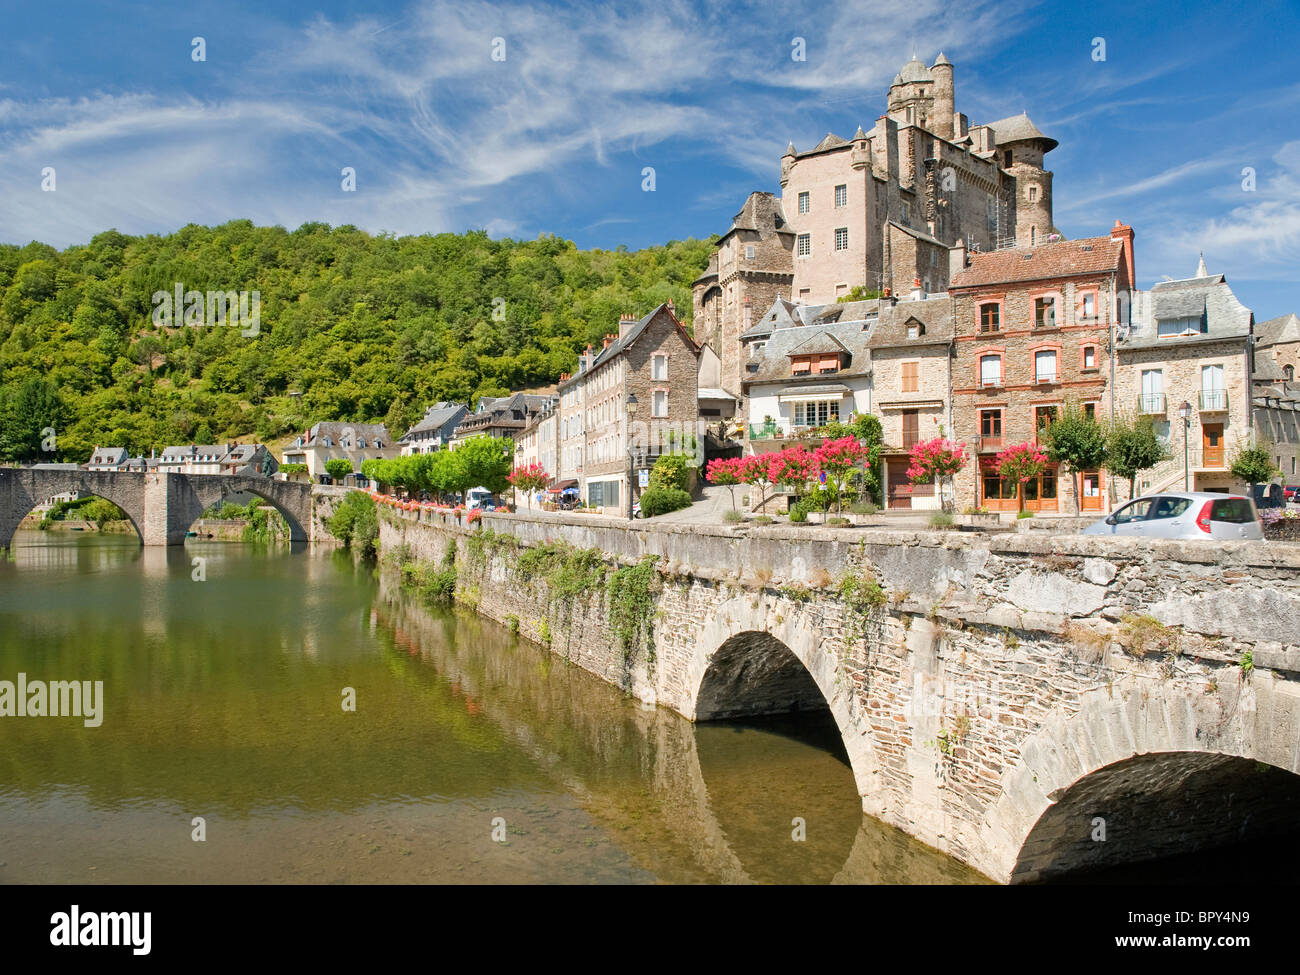 Estaing mittelalterliches Dorf Zentral-Frankreich Stockfoto